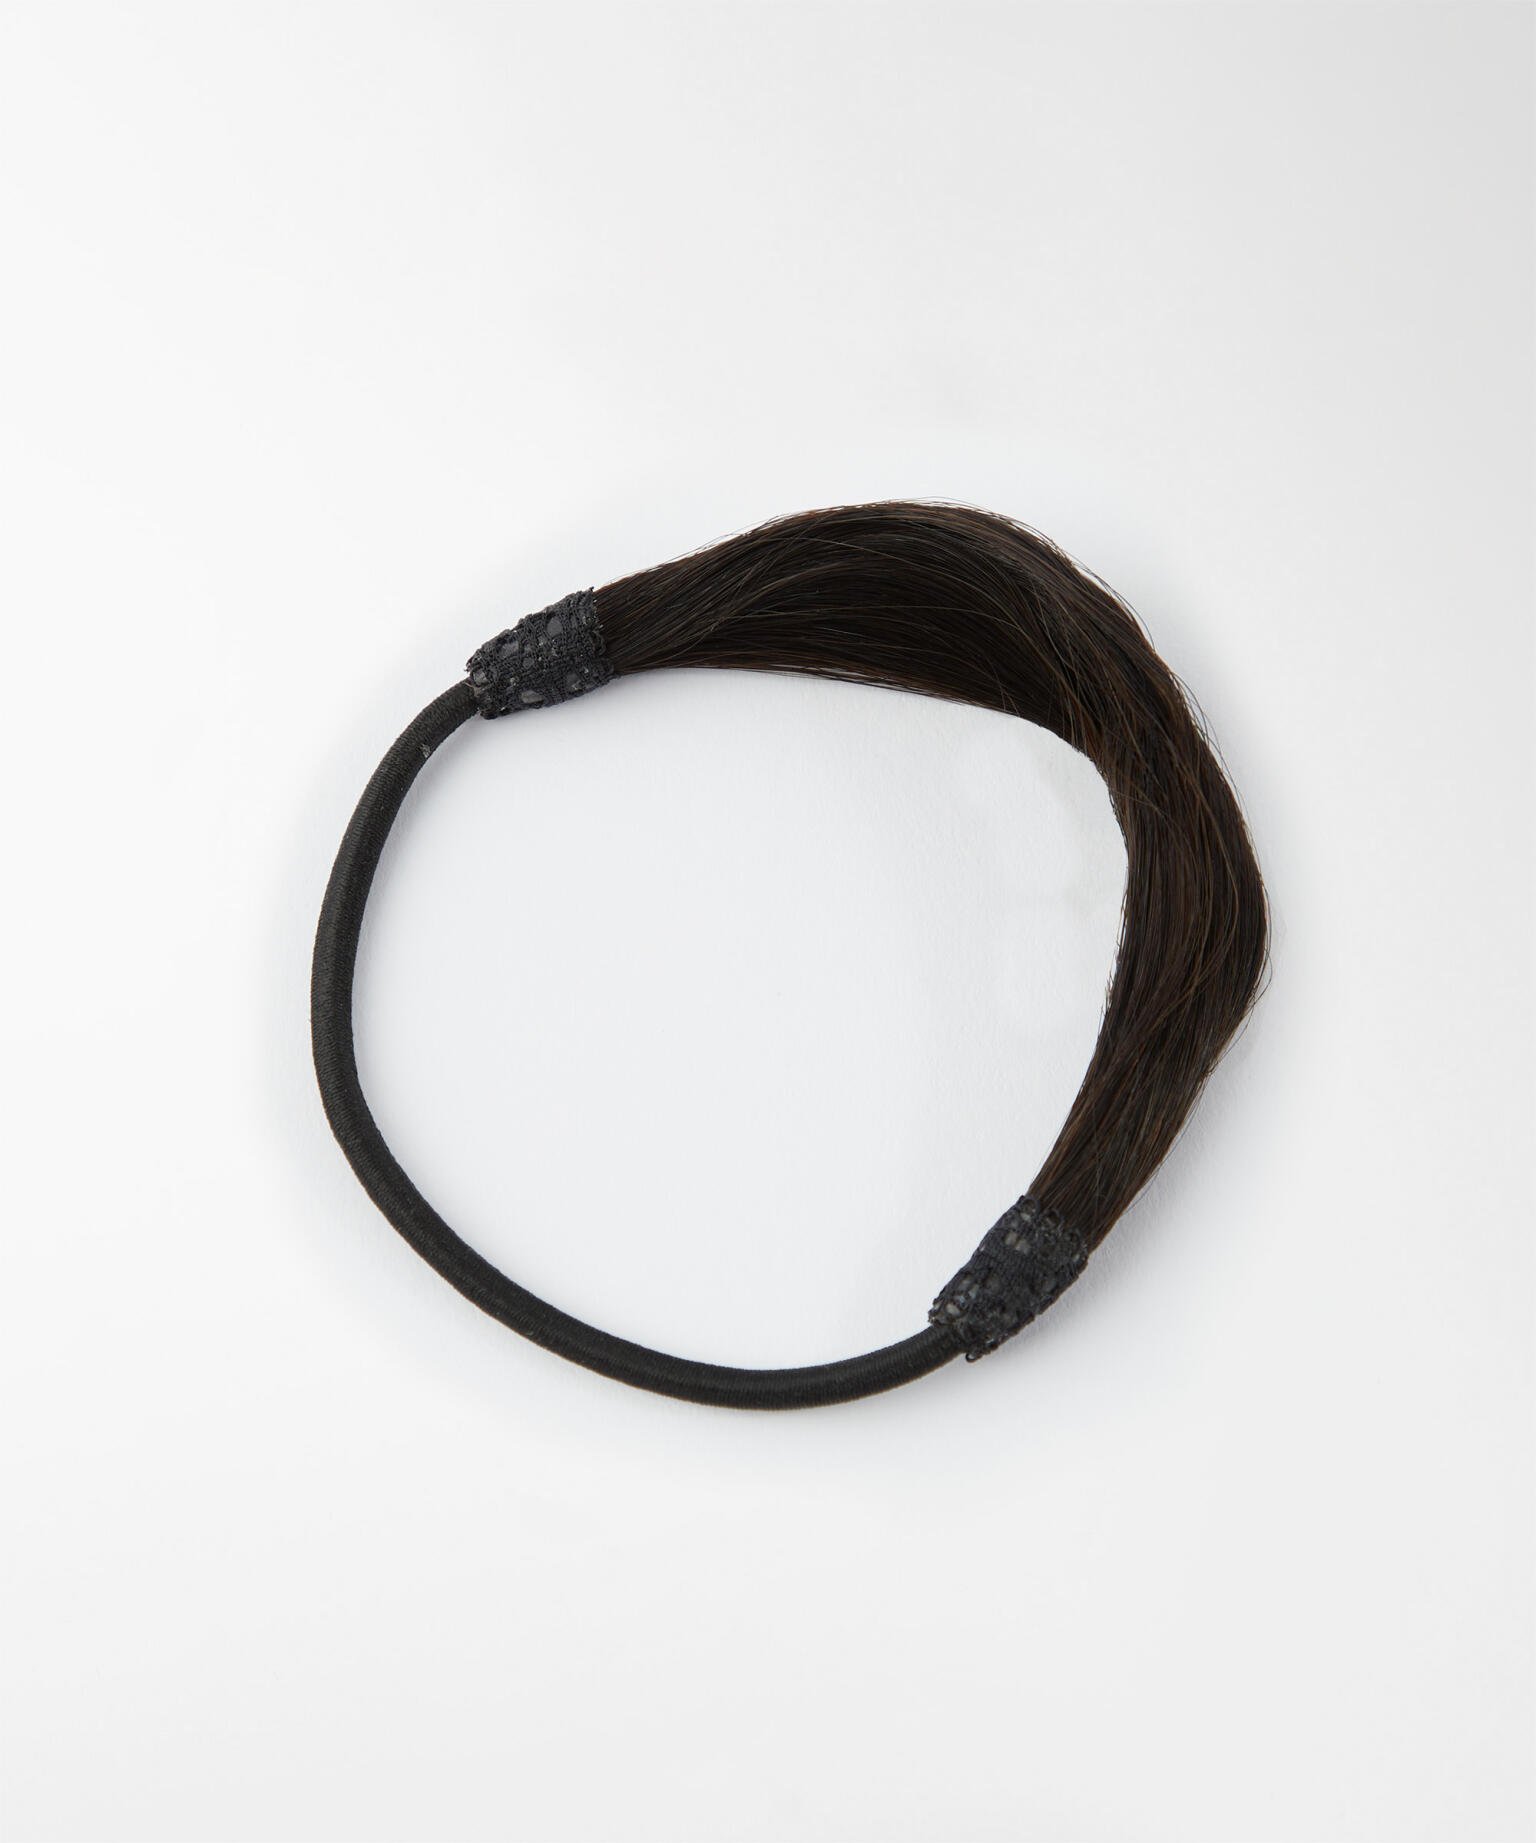 Hair-covered Hair Tie 1.2 Black Brown